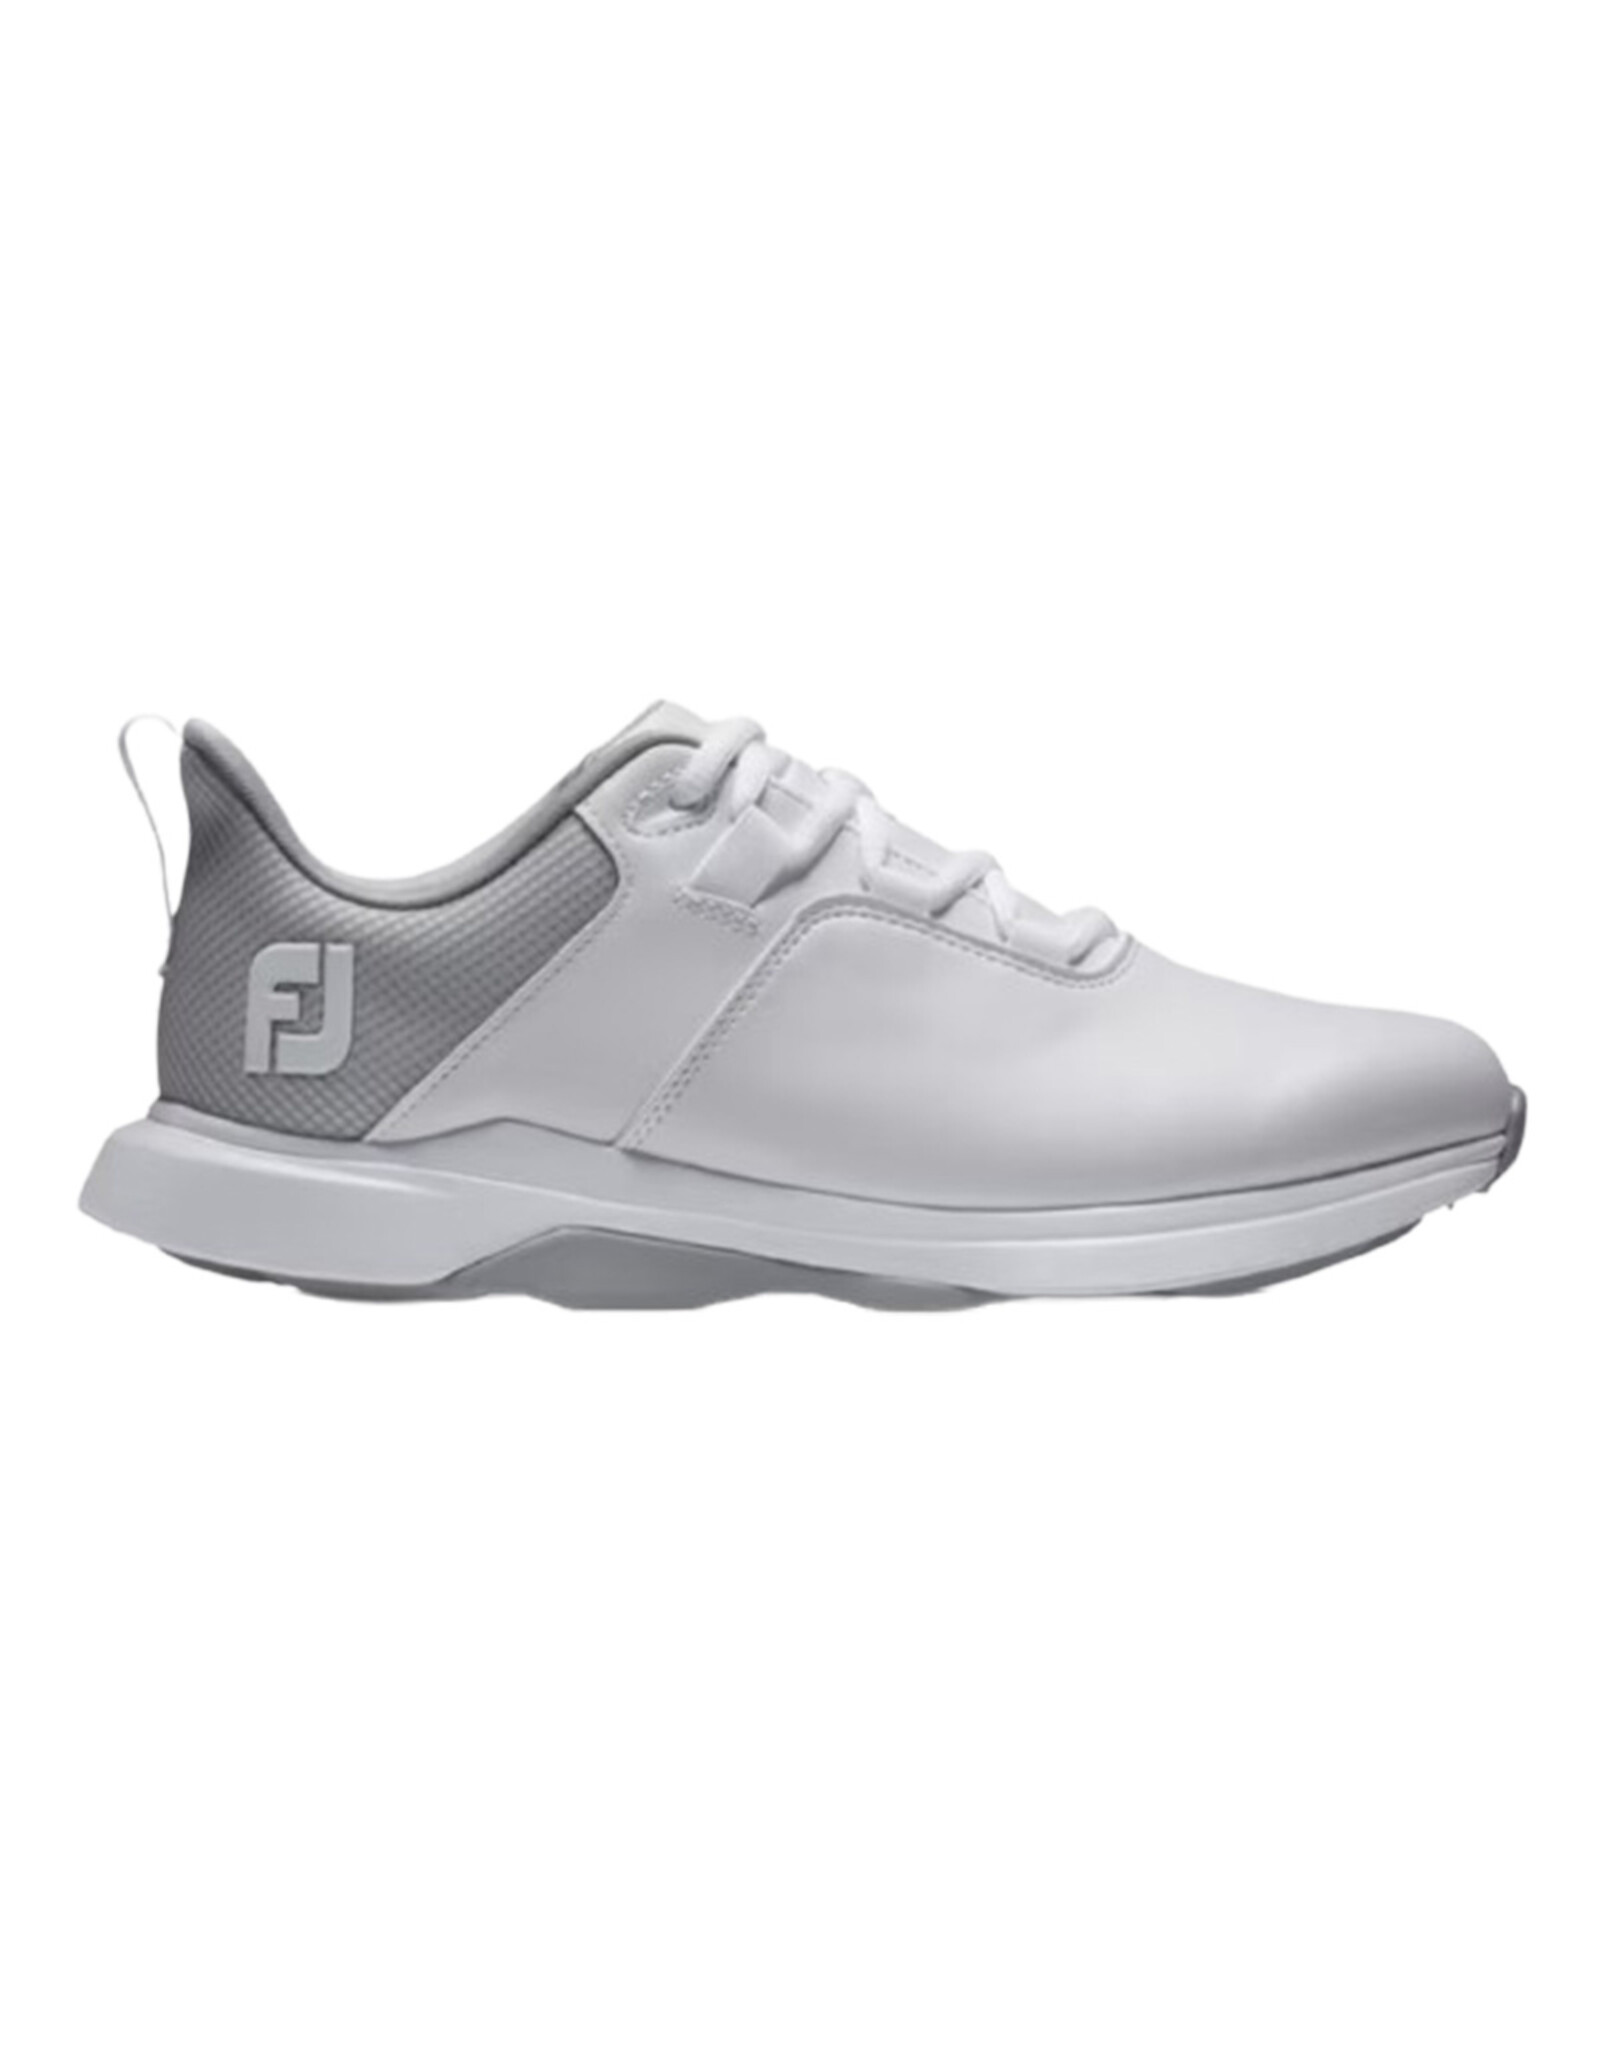 FootJoy FootJoy Women's ProLite White/Grey